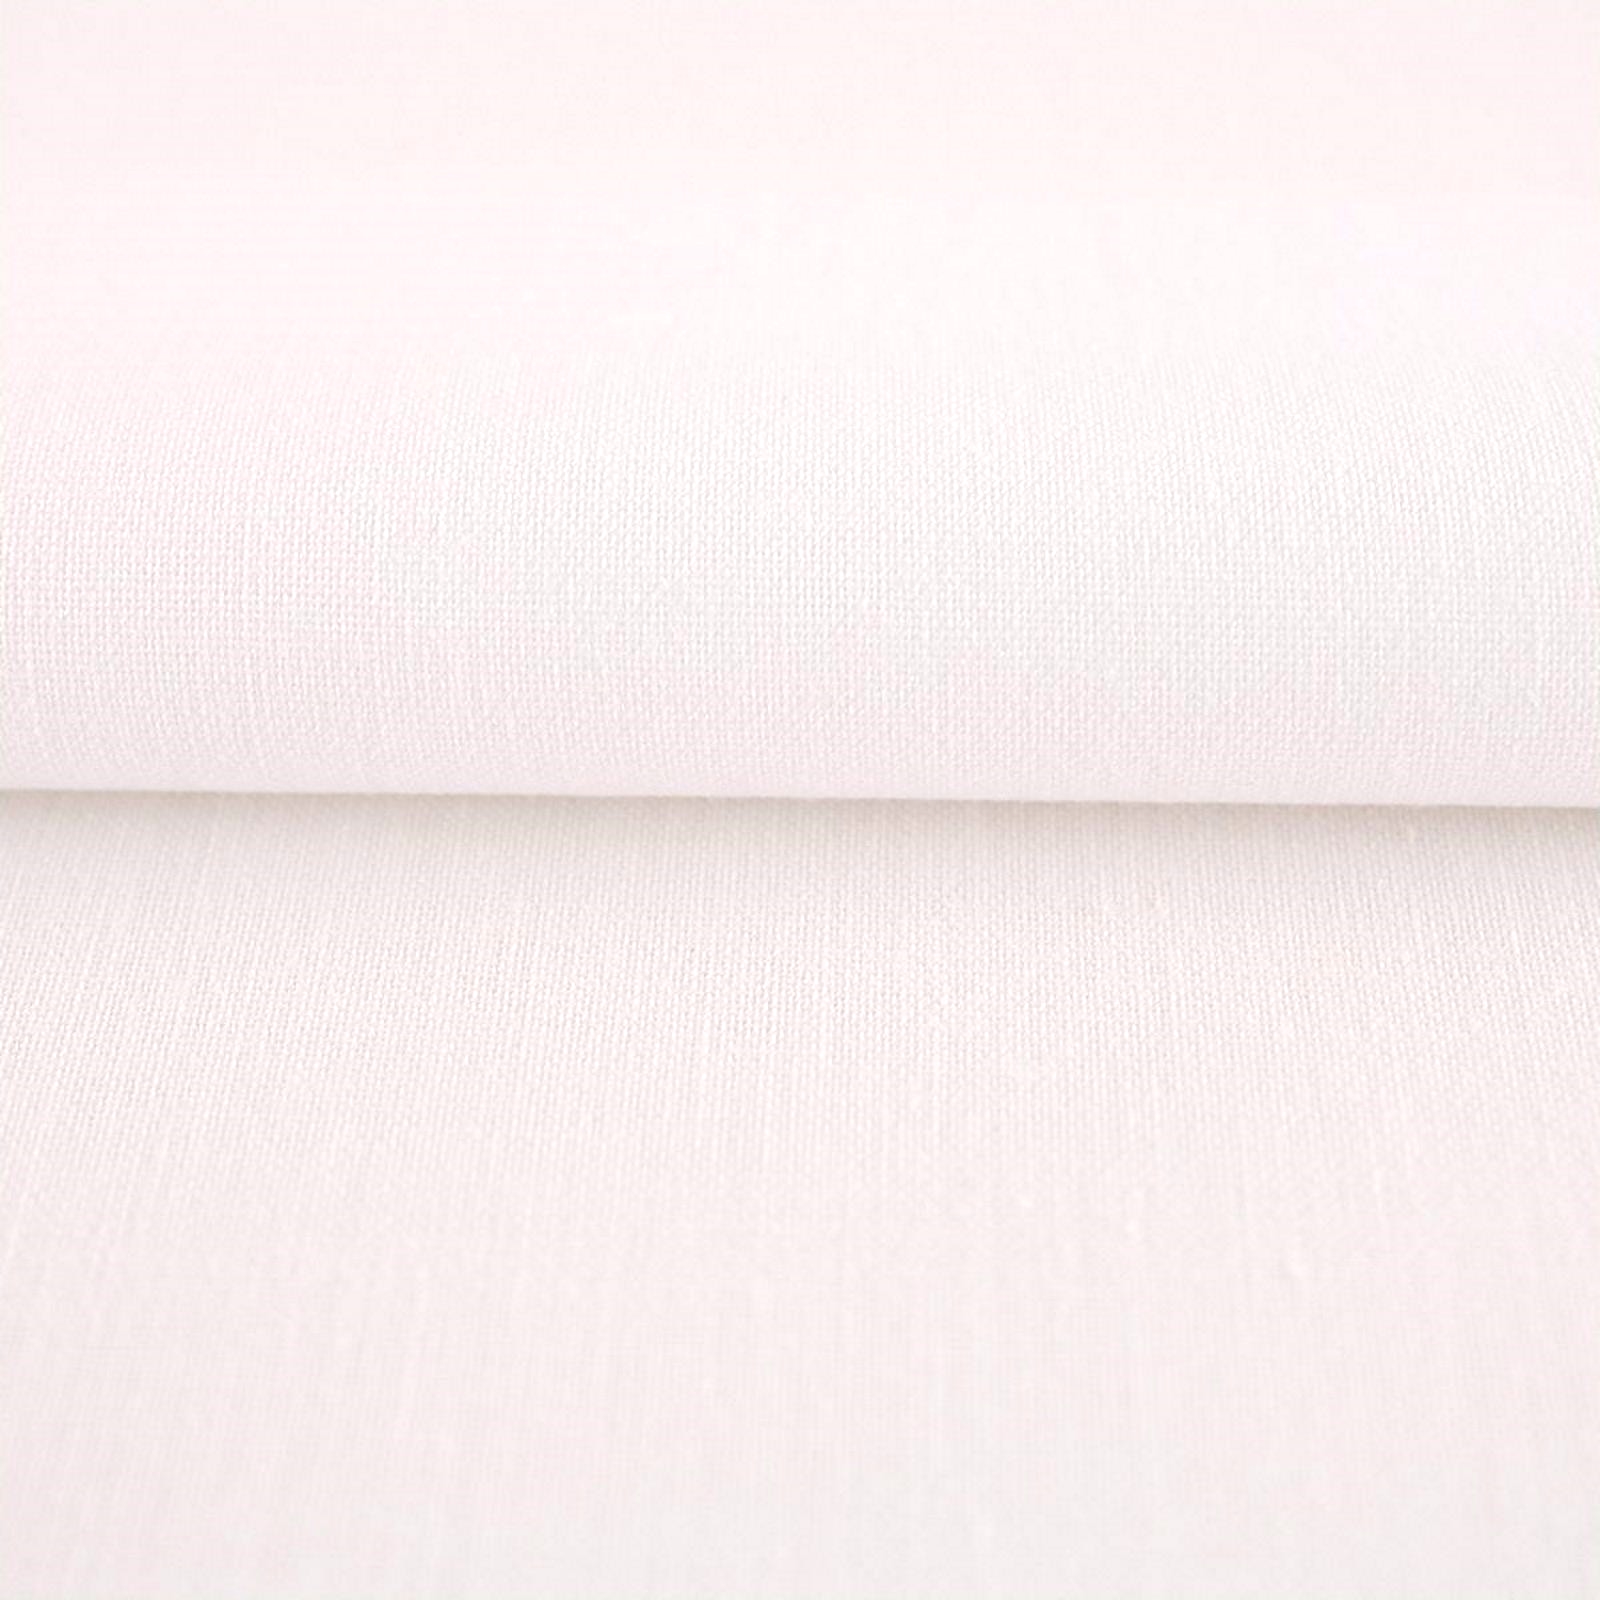 Sommerdecke Weiß Baumwolle Linon-120x200 cm